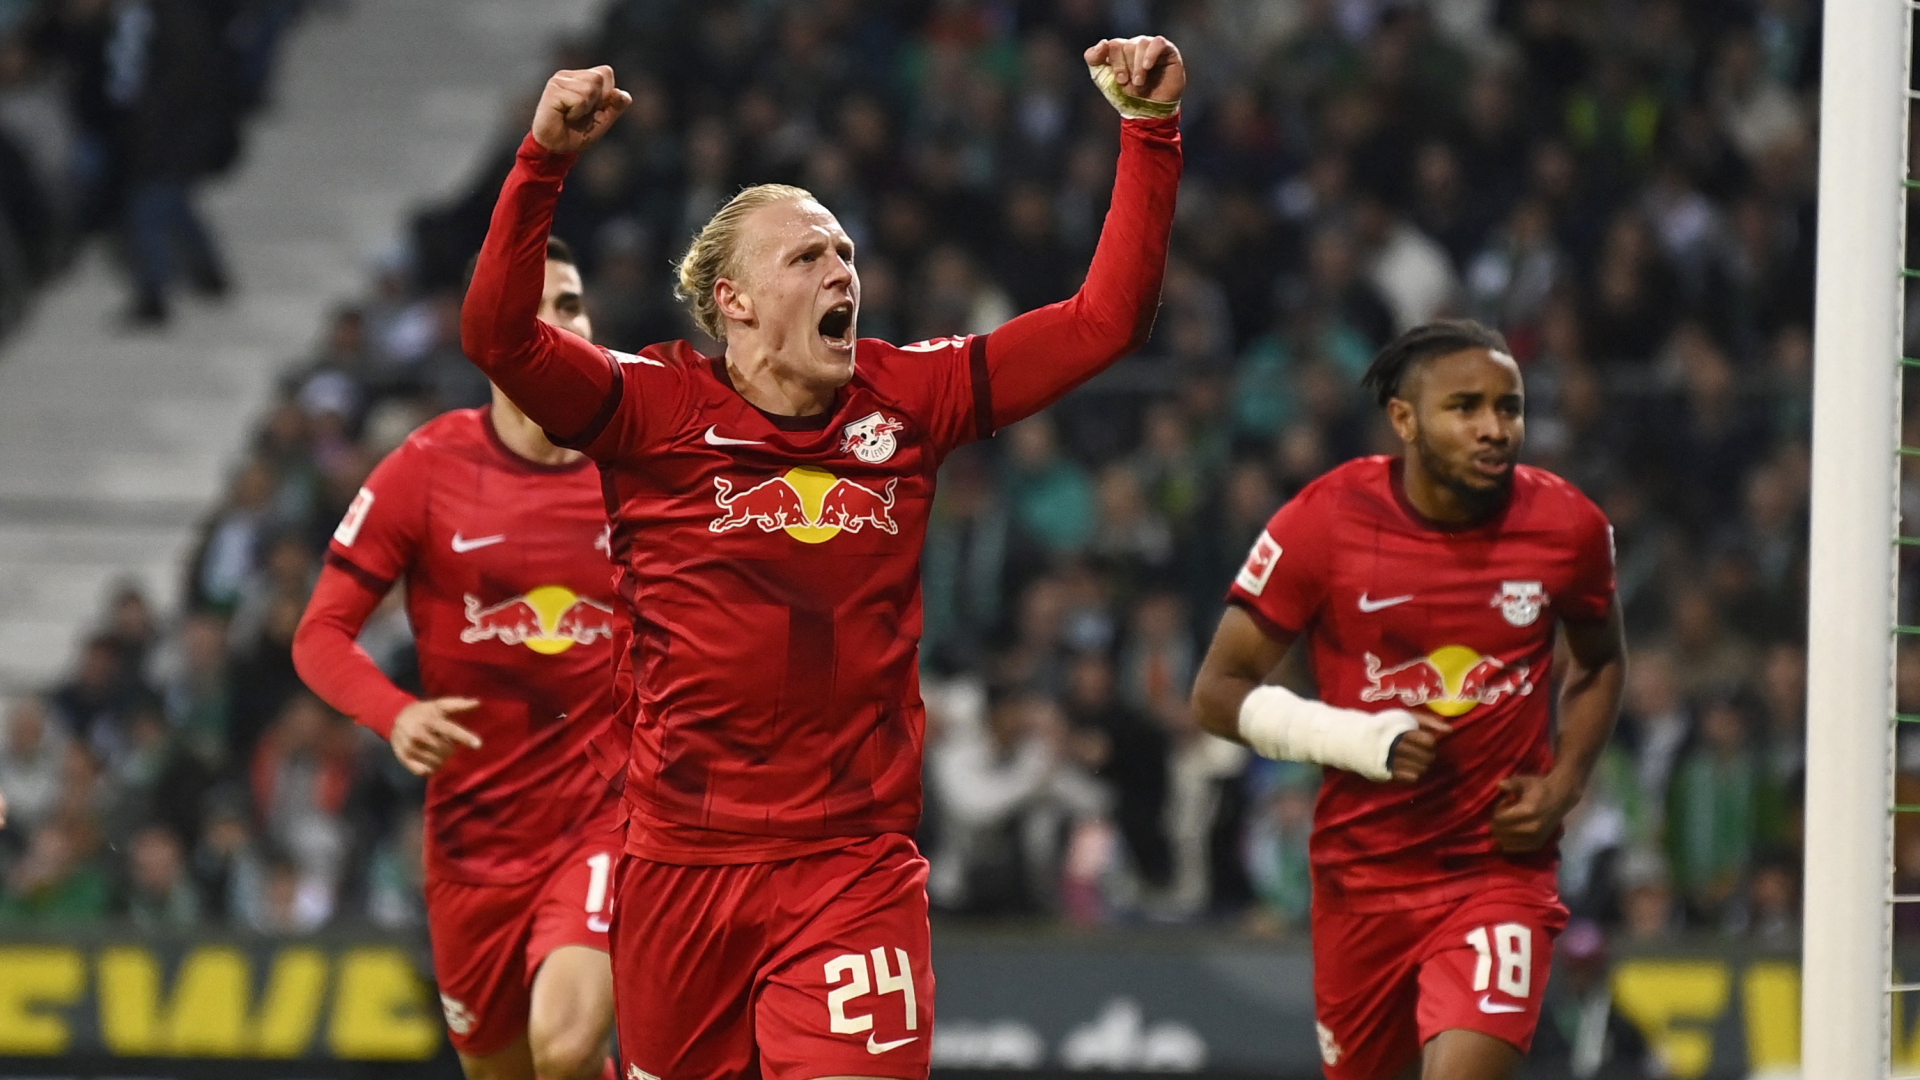 Leipziger Spieler jubeln nach einem Tor im Auswärtsspiel bei Werder Bremen | REUTERS